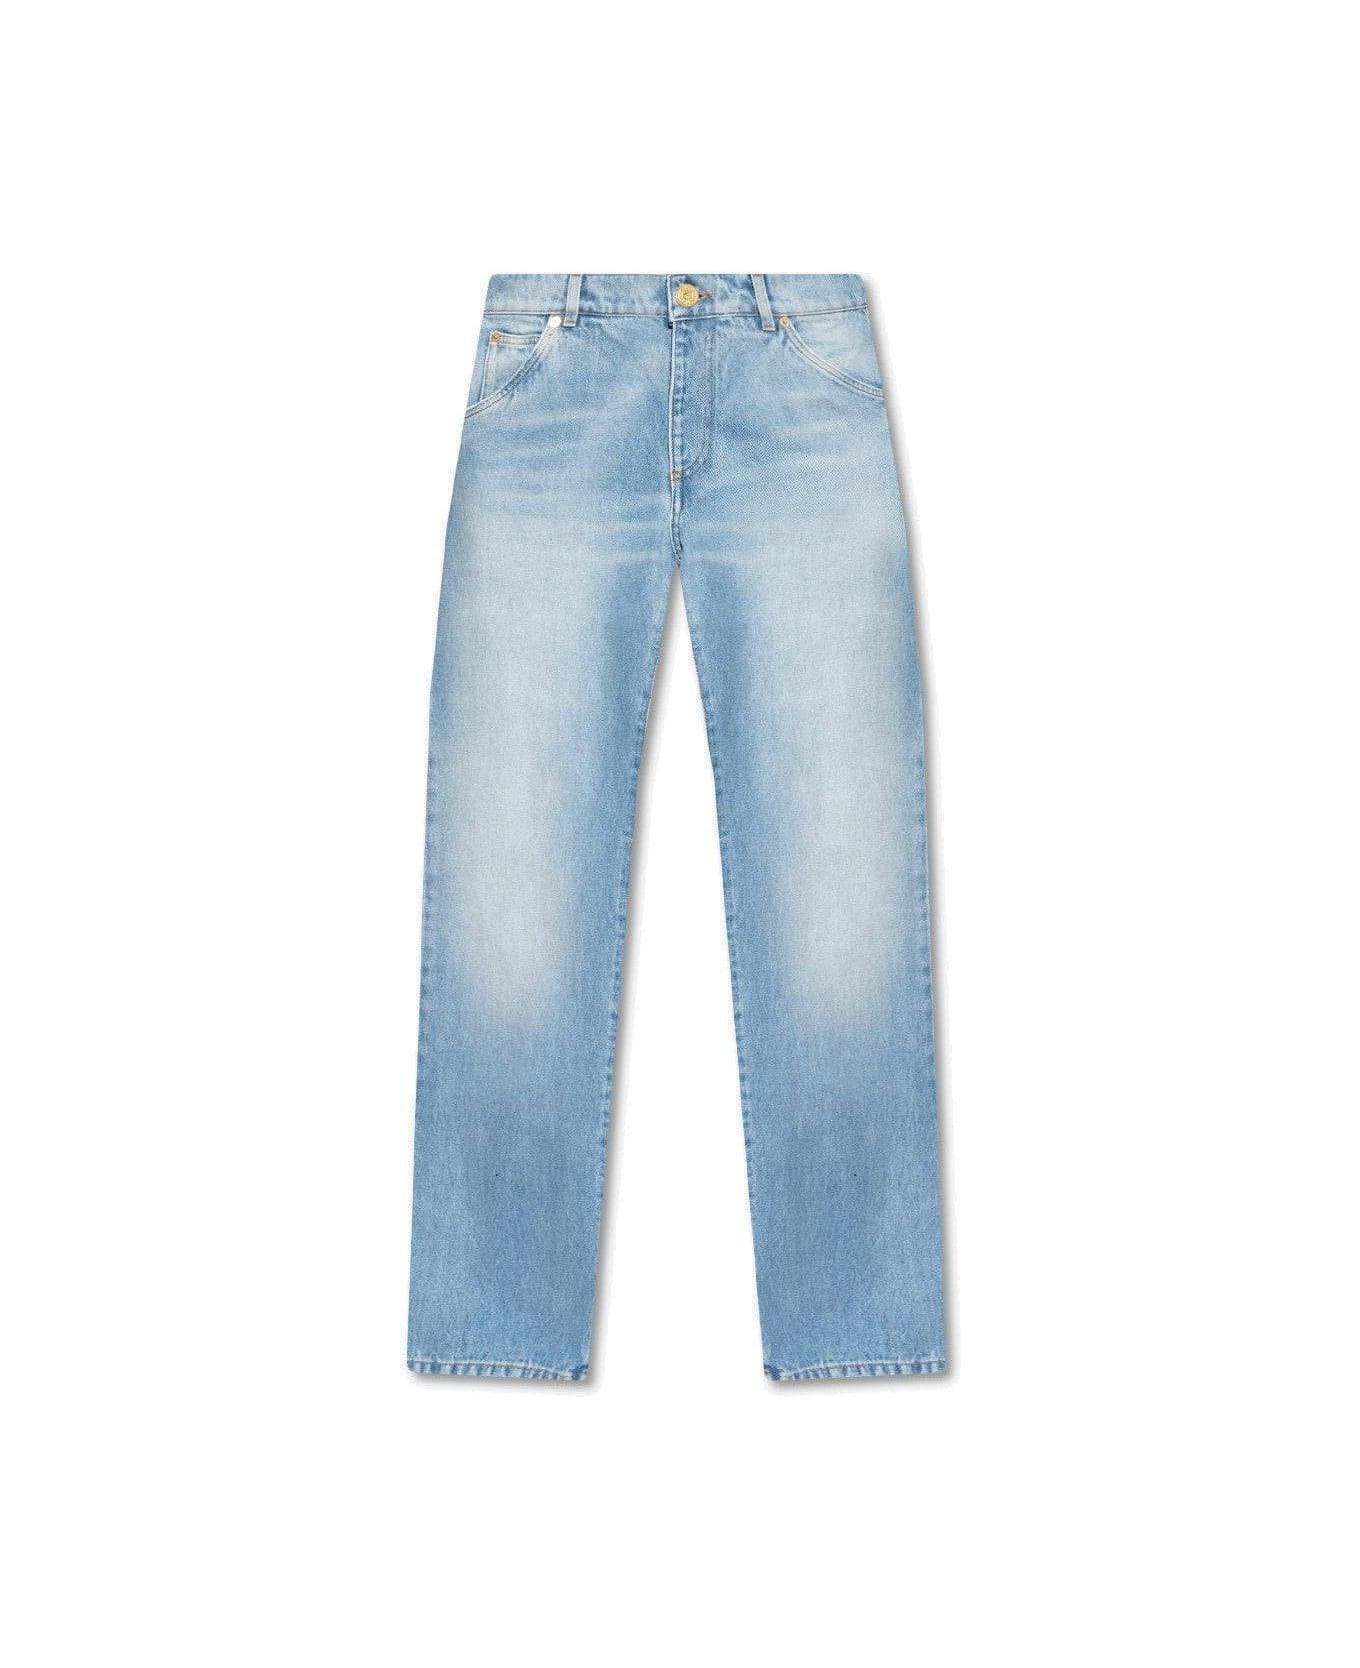 Balmain Straight-leg Jeans - Denim